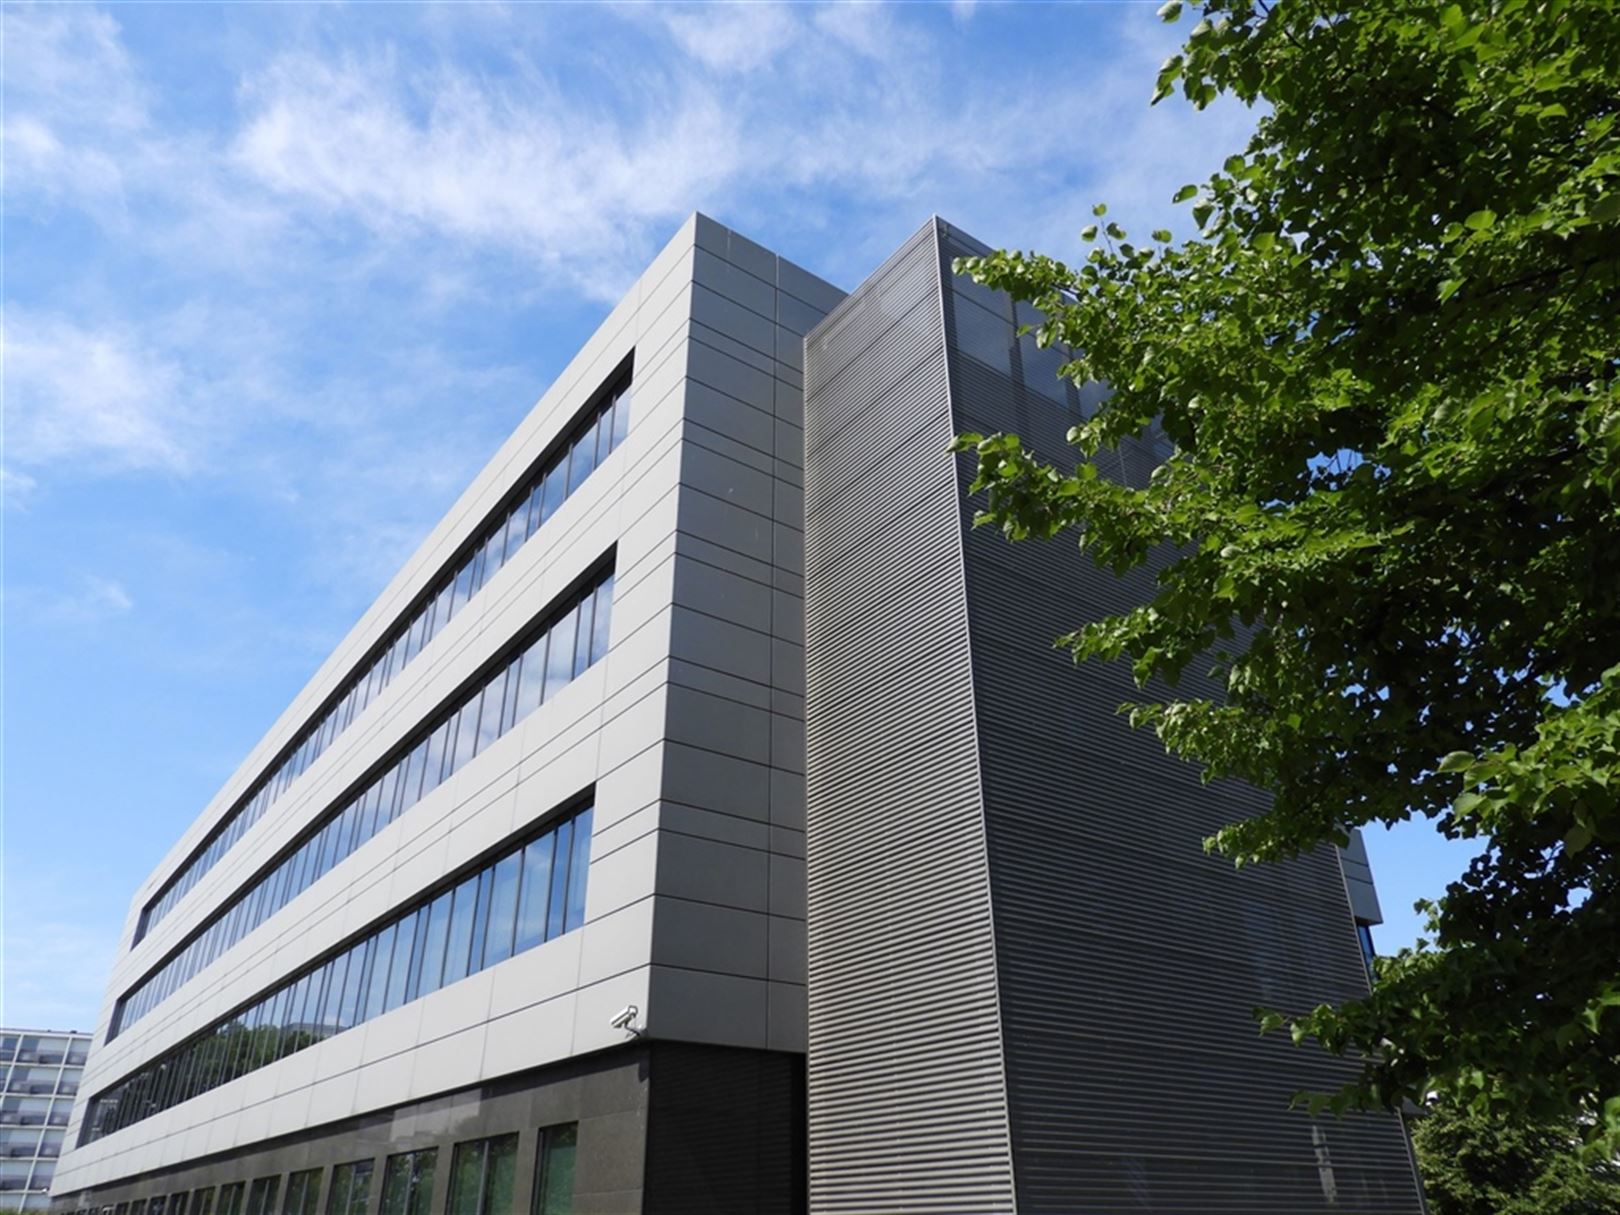 BERKENLAAN 3: kantoorgebouw strategisch in Diegem gelegen met beschikbare oppervlaktes vanaf ong. 600m² tot ong. 1.300m² foto 3